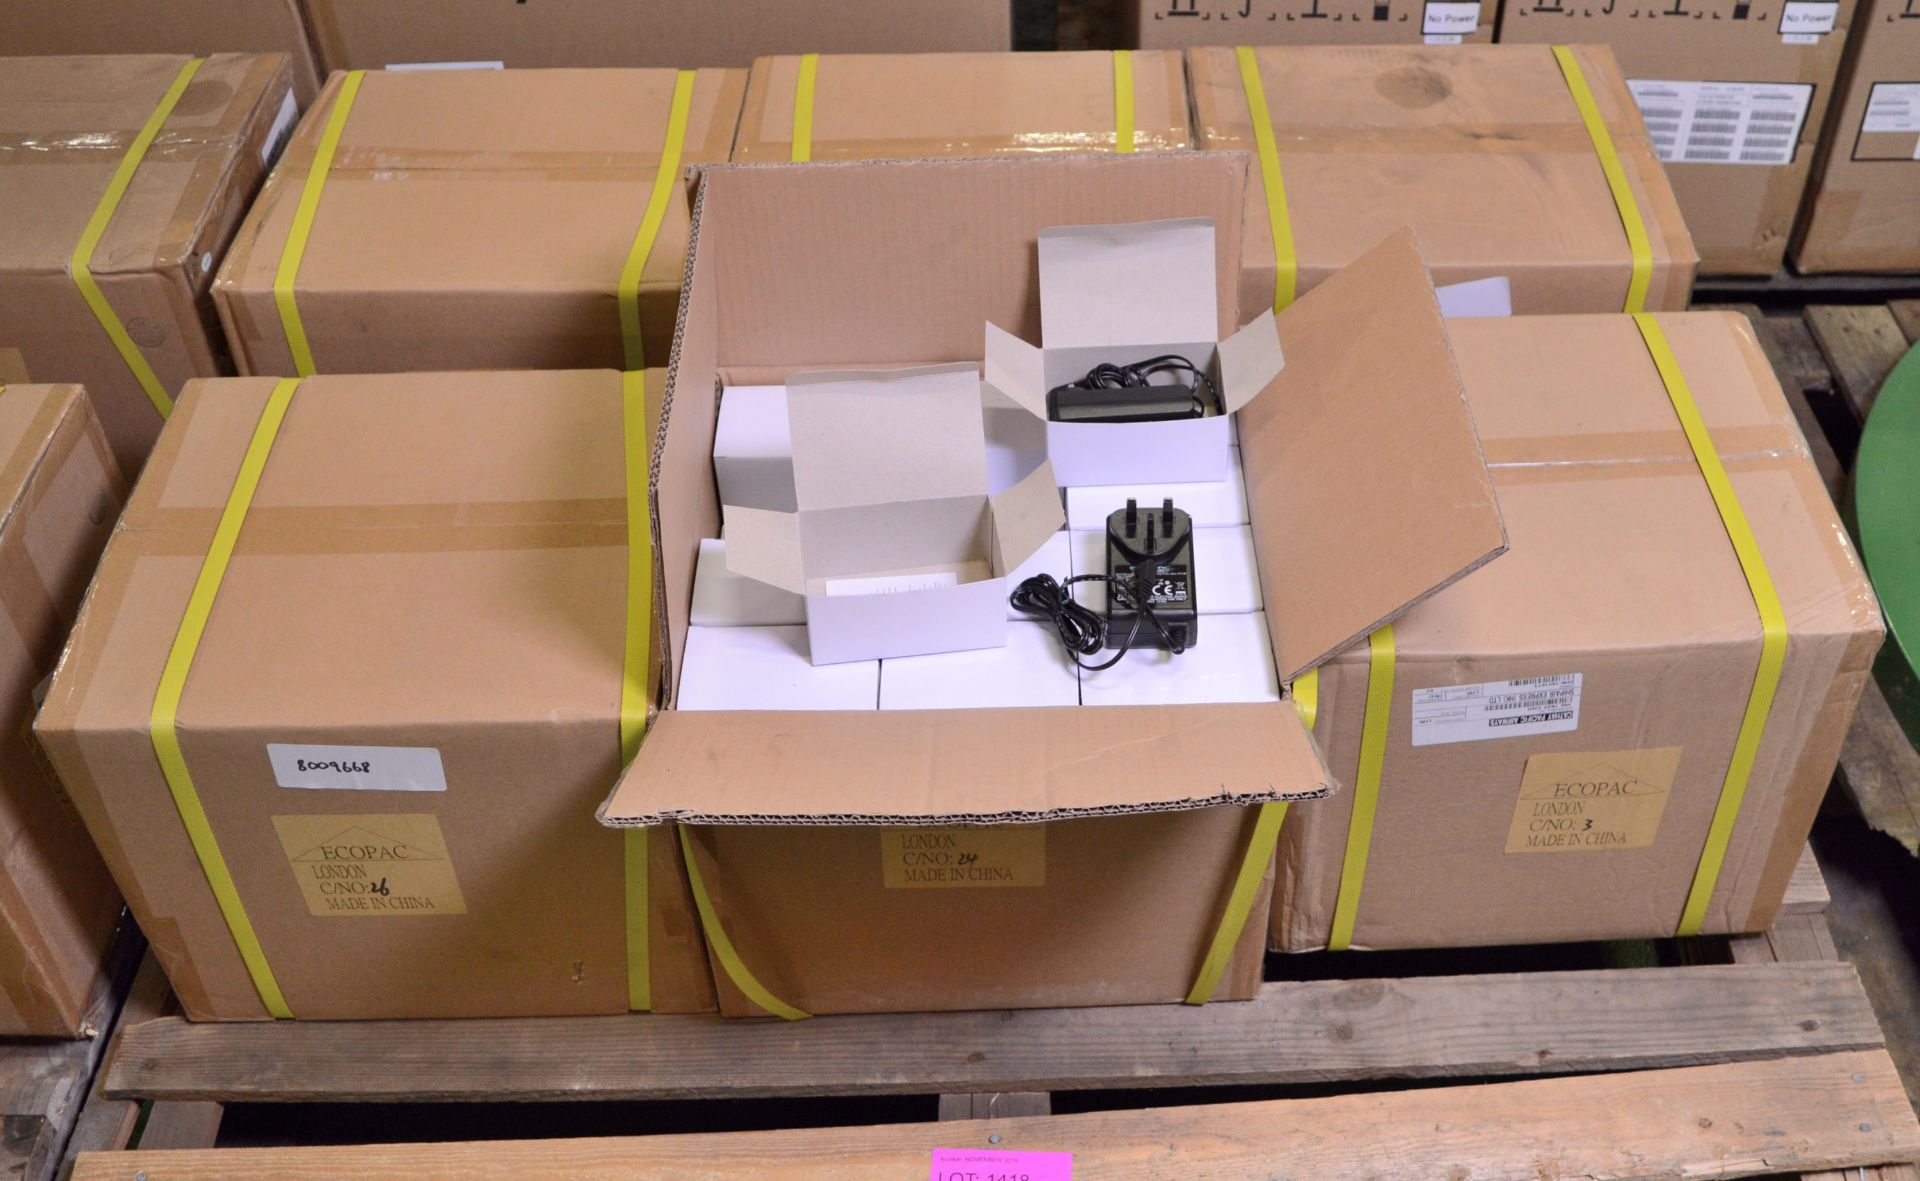 6x Boxes 100 - 240v Power Supply Units - 60 Per Box.